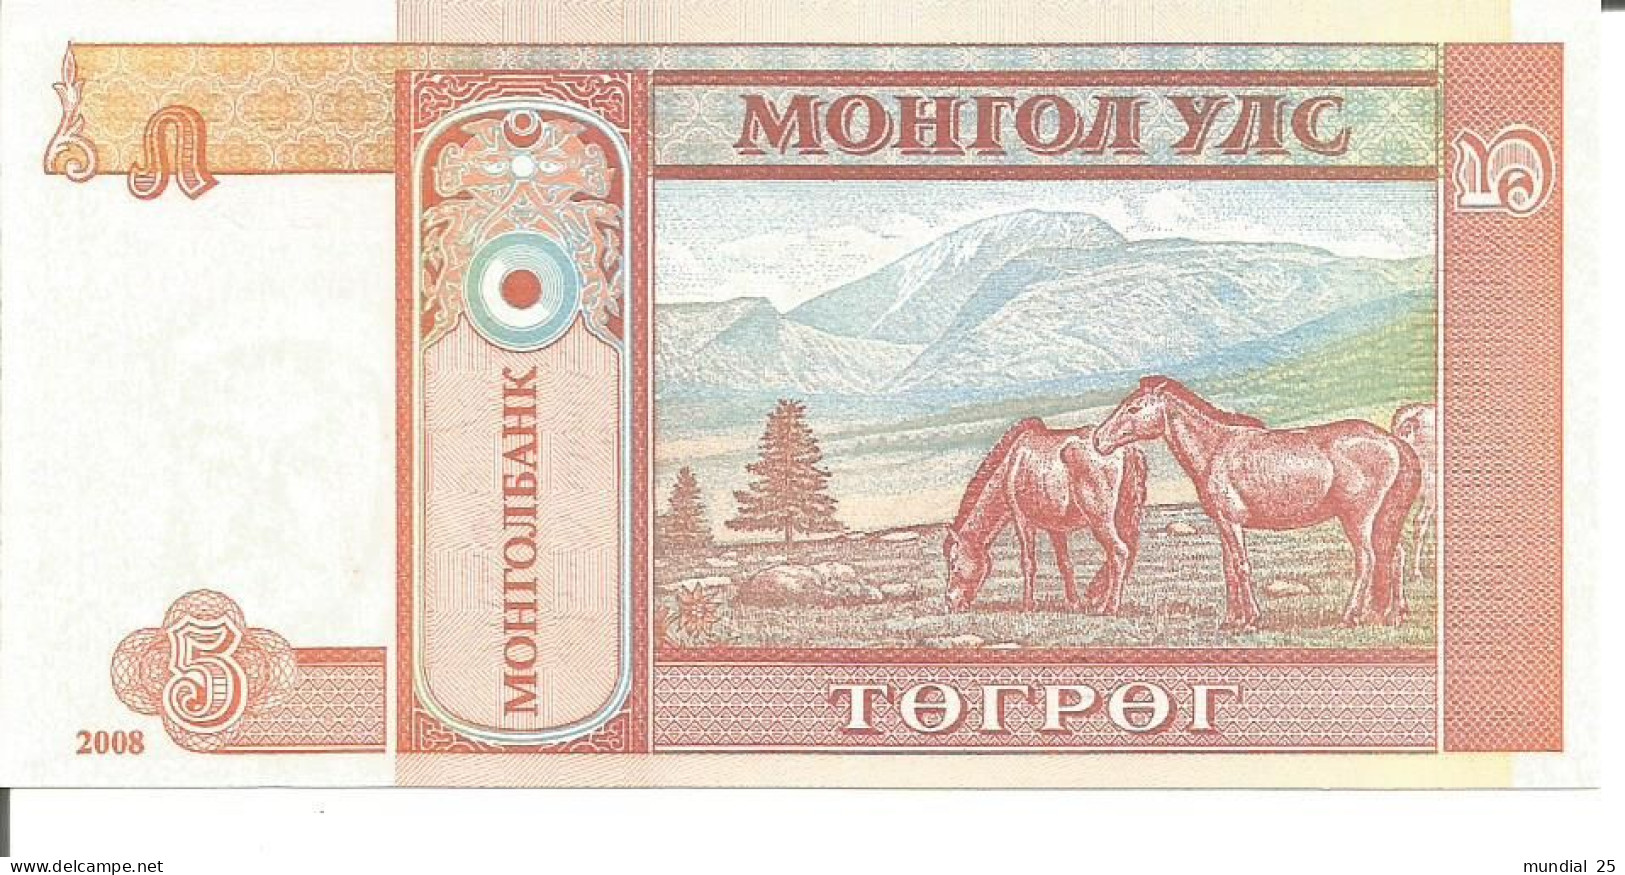 3 MONGOLIA NOTES 5 TUGRIK 2008 - Mongolie